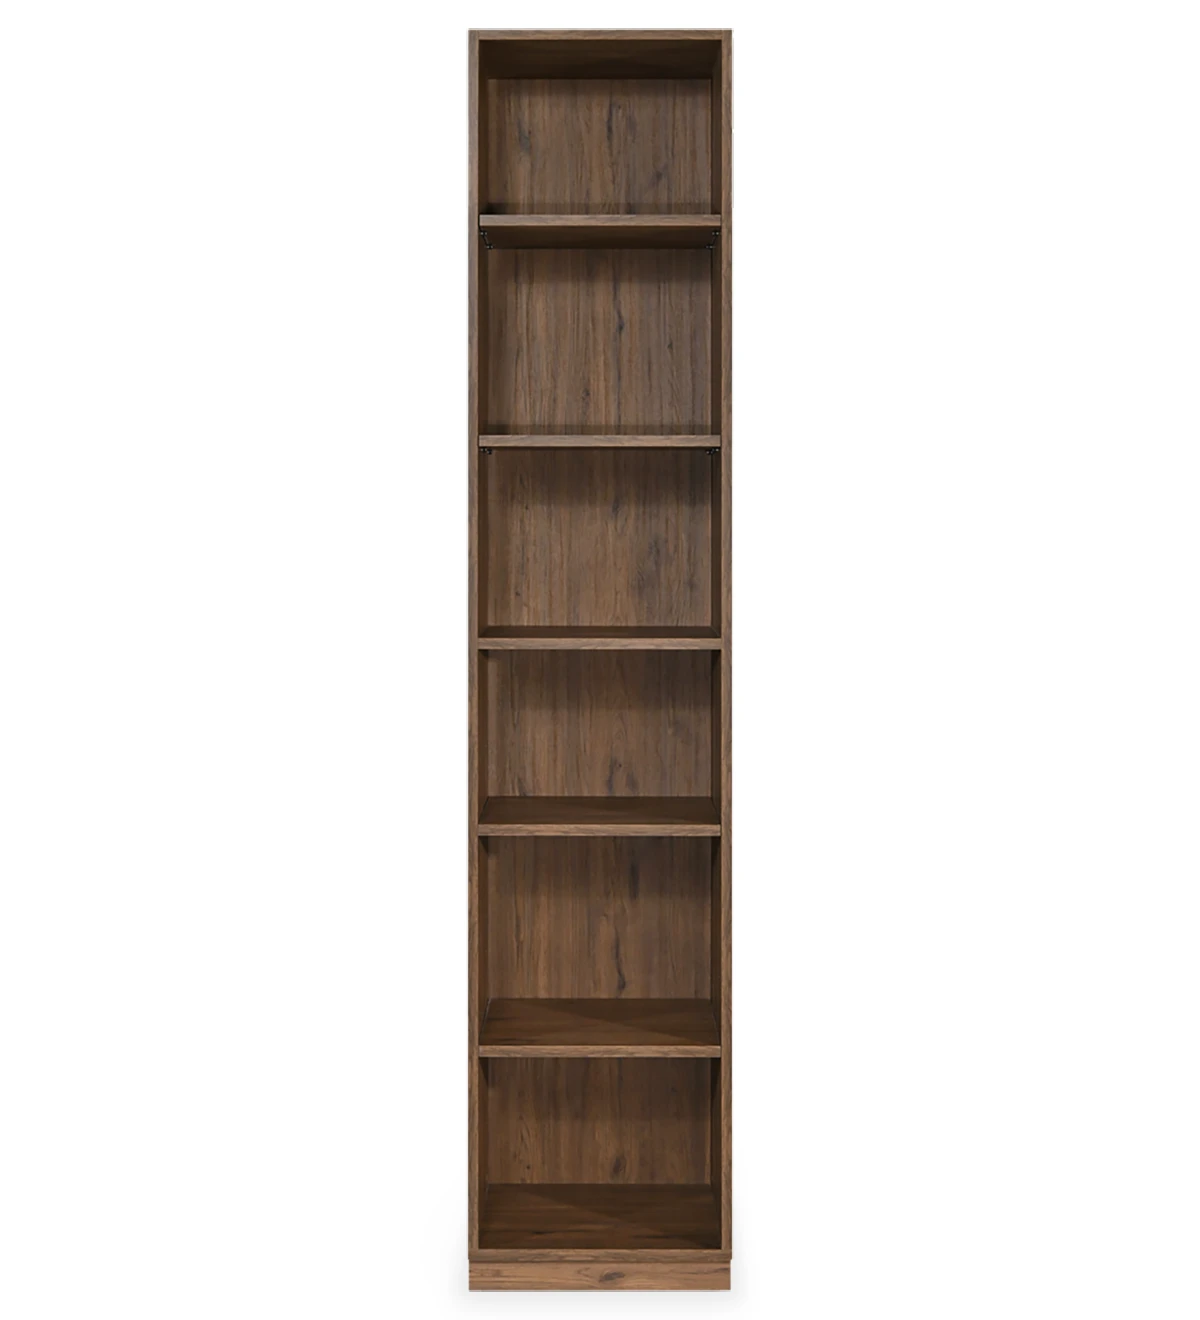 Librería alta de roble envejecido, con estantes extraíbles.